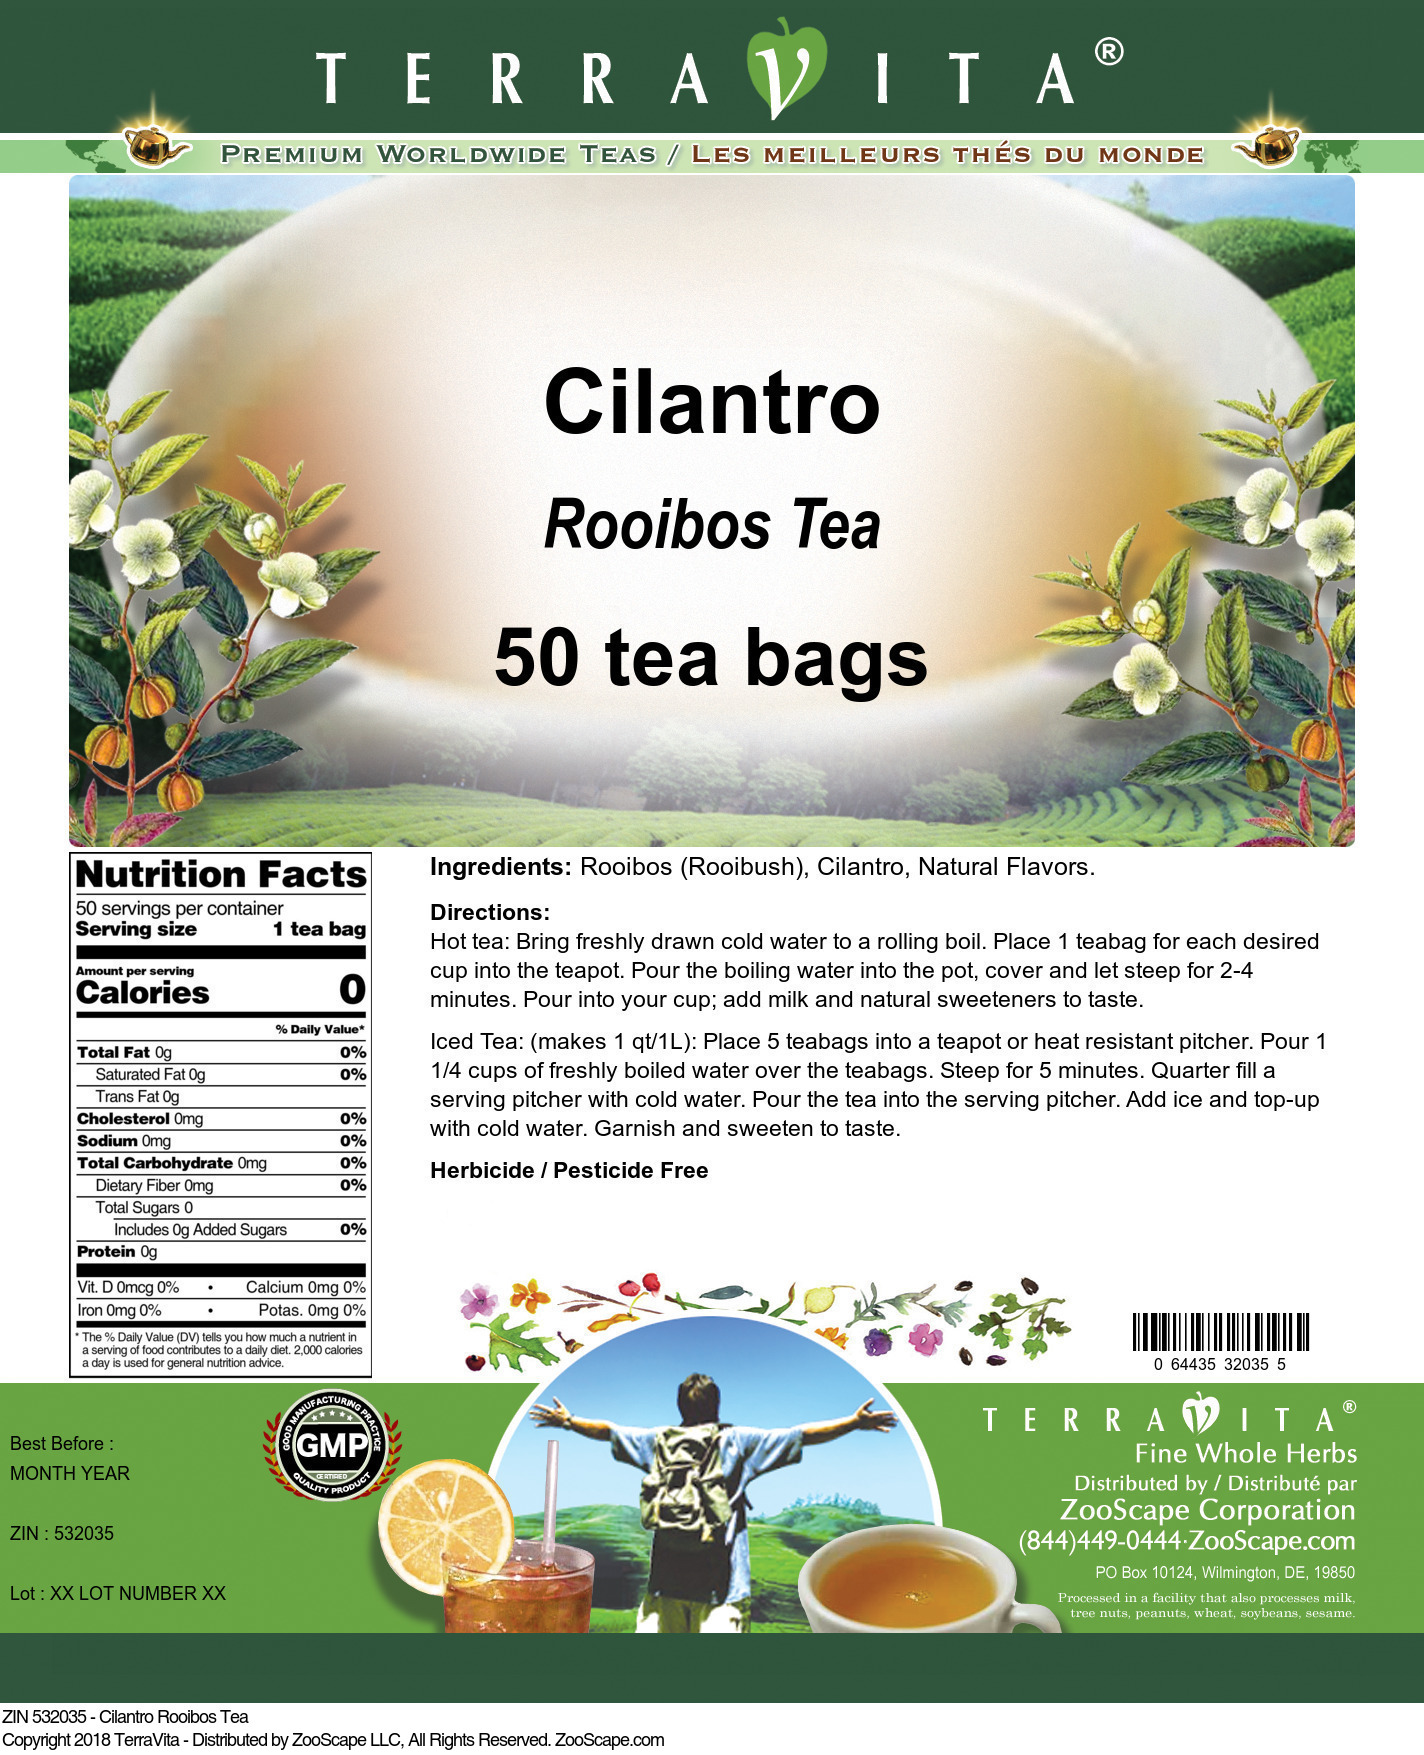 Cilantro Rooibos Tea - Label